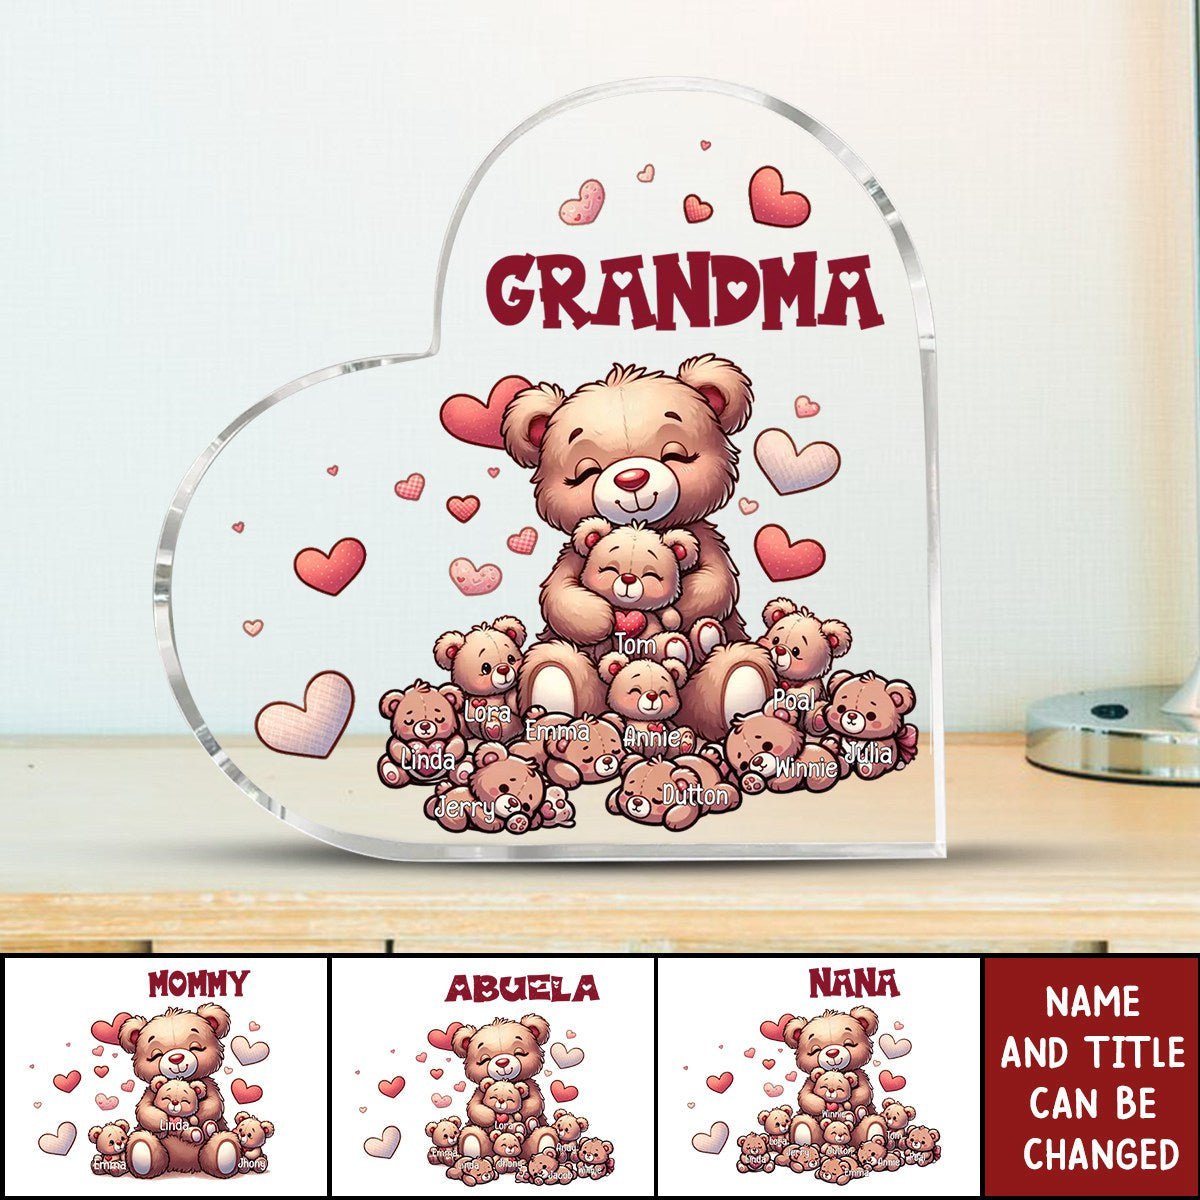 Nana's Bear - Personalized Heart-shaped Acrylic Plaque